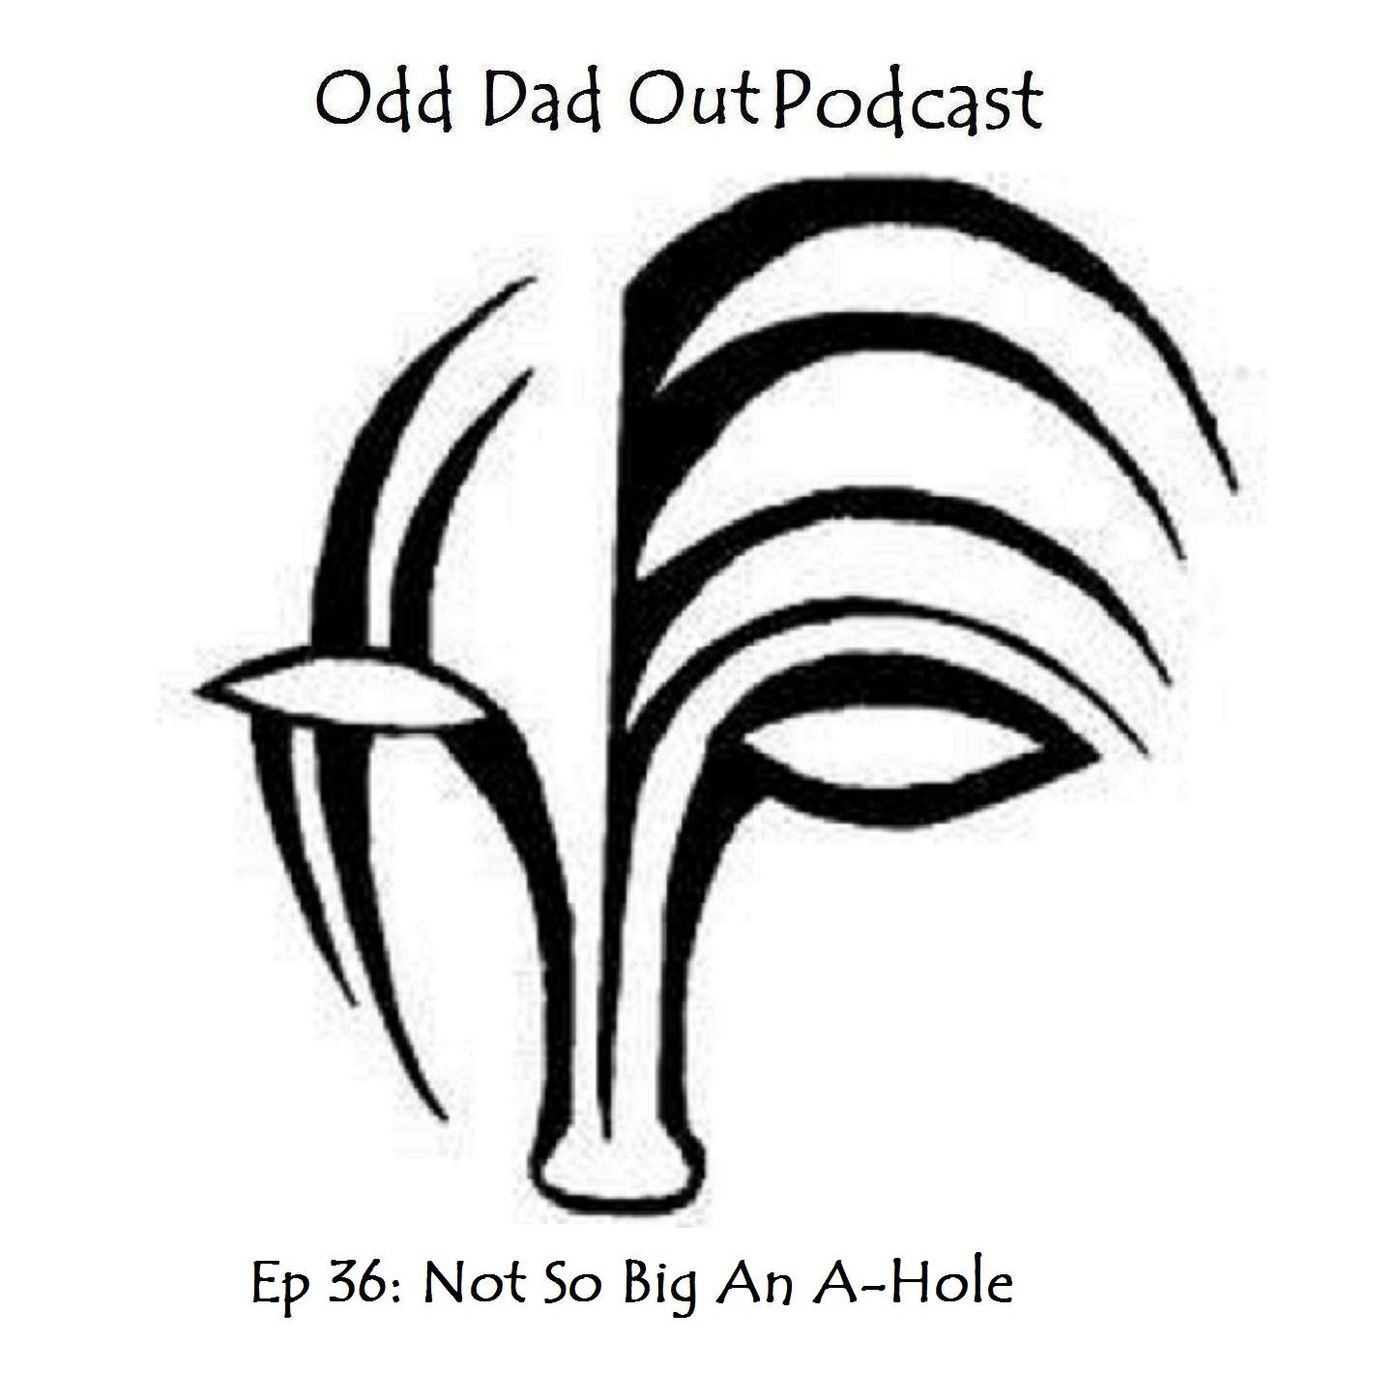 Not So Big an A-Hole: ODO 36